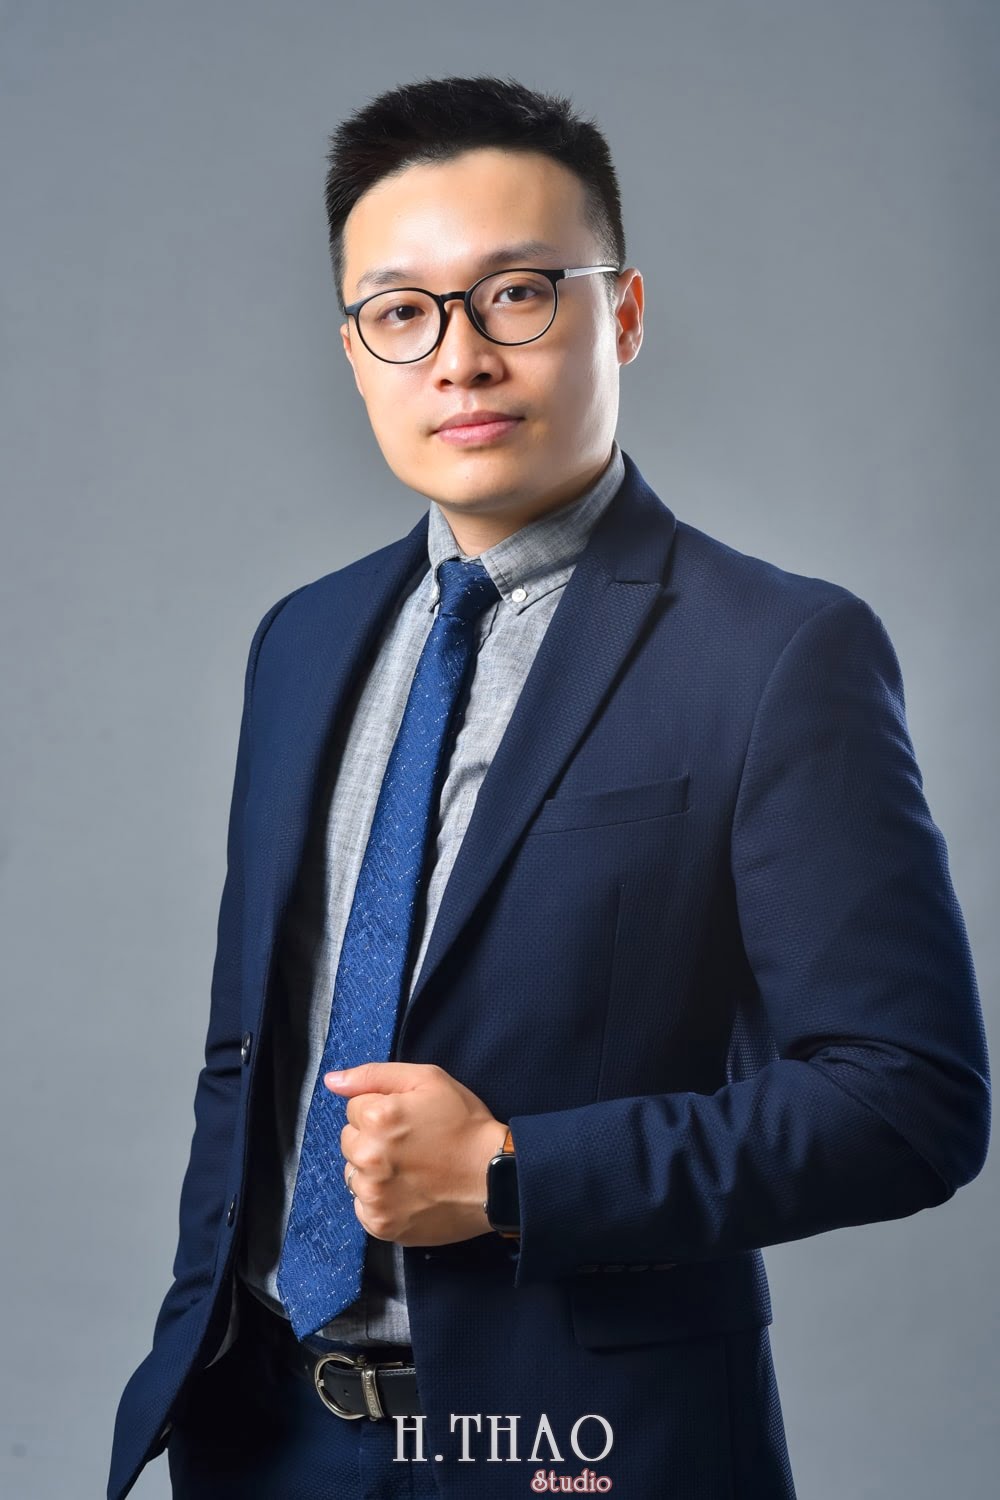 Anh profile  13 min - Tổng hợp ảnh profile nghề nghiệp bác sĩ, ngân hàng đẹp- HThao Studio